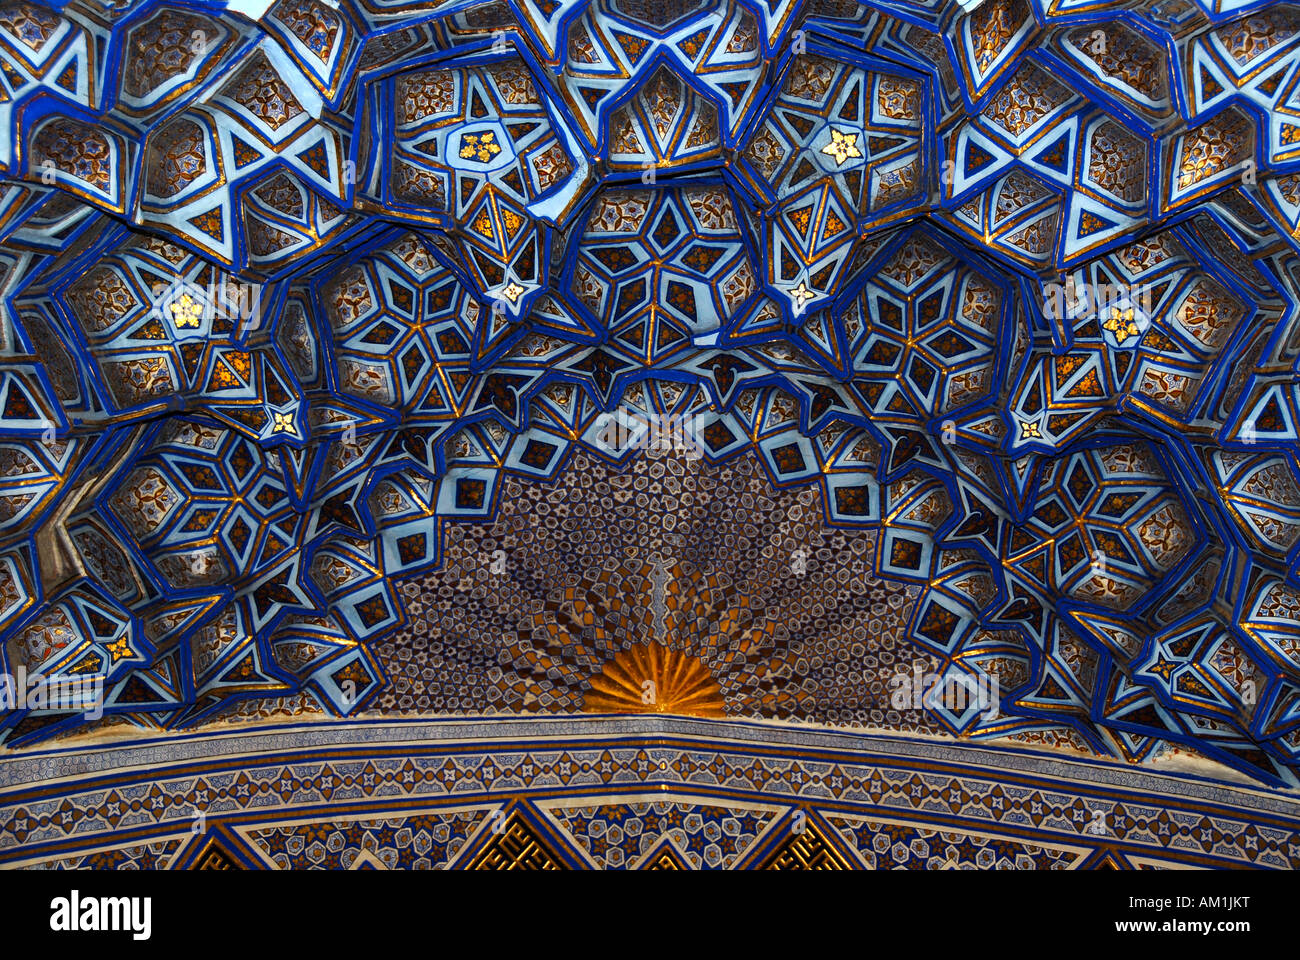 Belle décoration d'un plafond voûté avec des stalactites à l'intérieur de Gur-e Amir Mausoleum Samarkand Ouzbékistan Banque D'Images